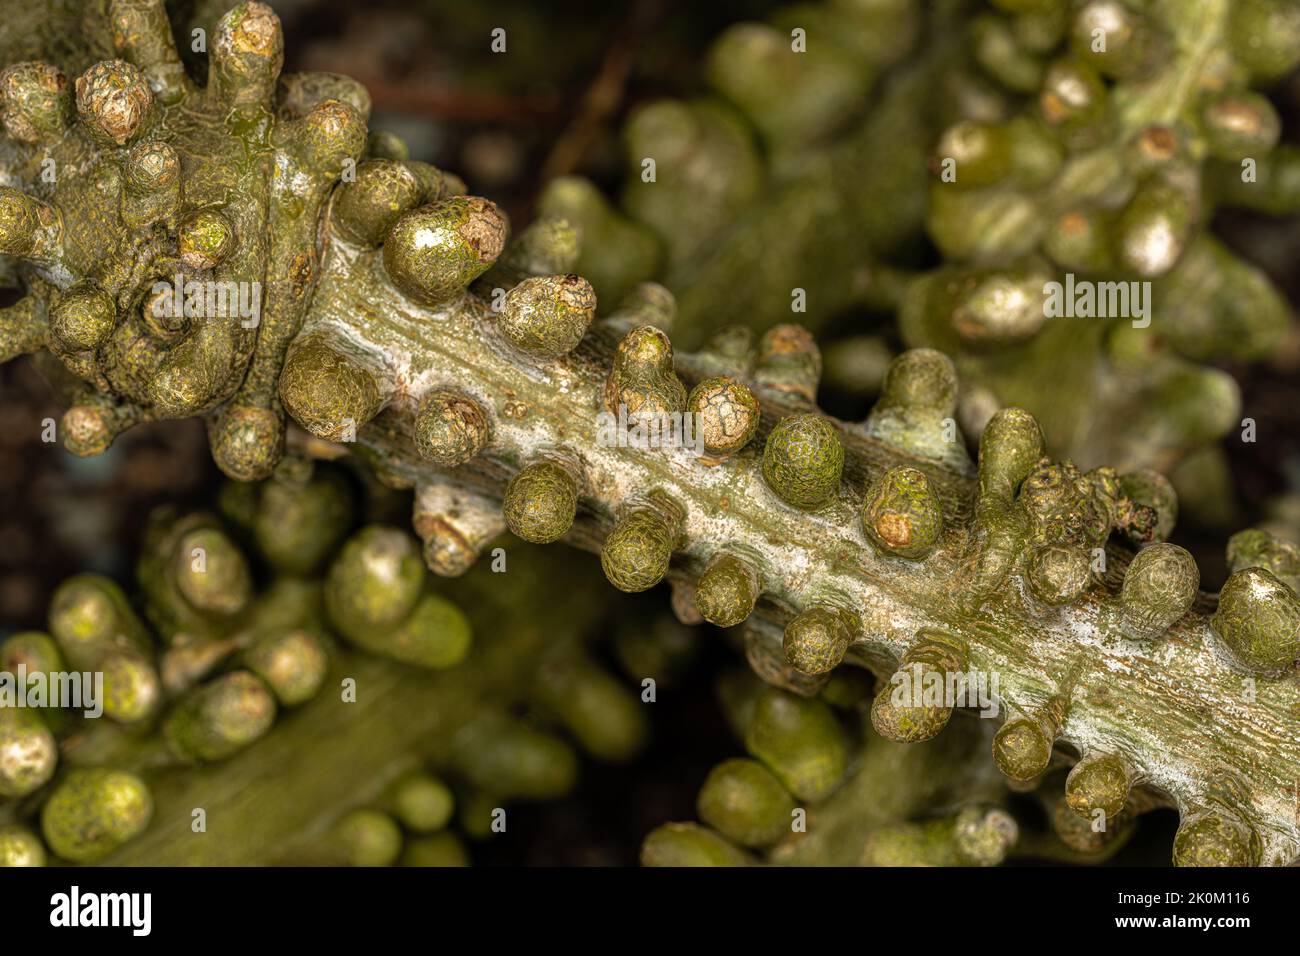 Stem of a Climbing Shrub (Adenia lobata) Stock Photo